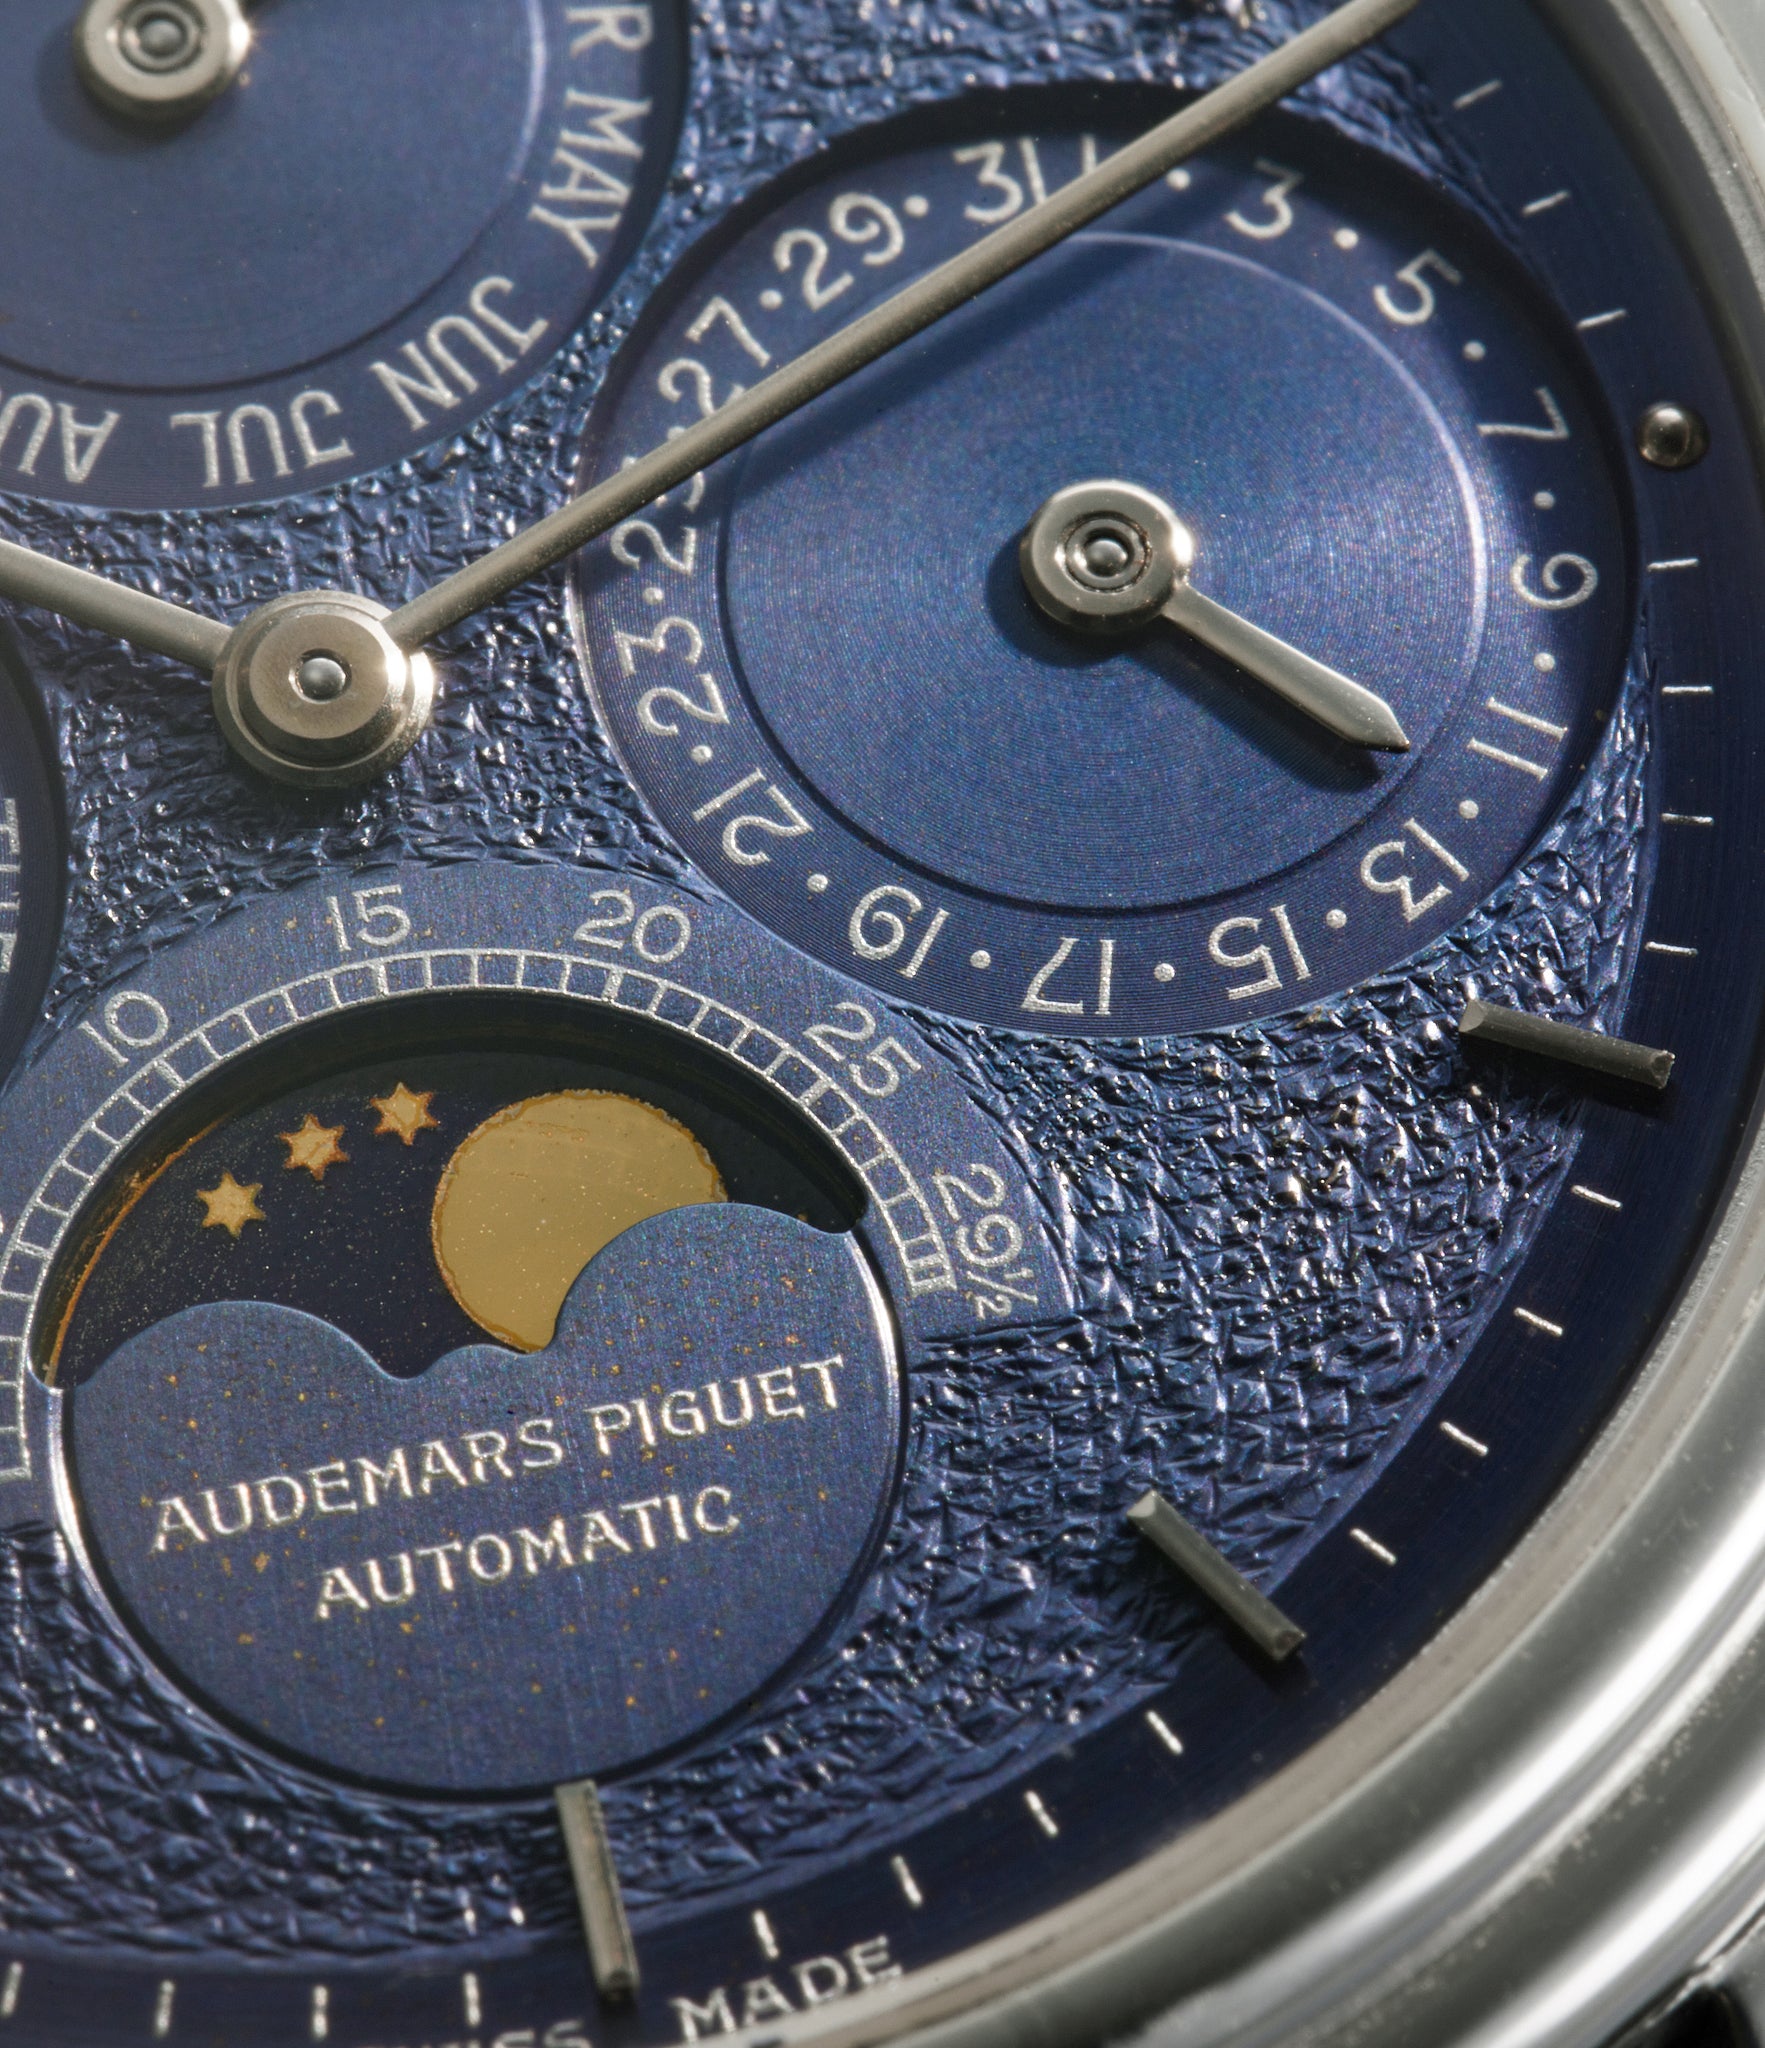 Quantième Perpétuel 25657/002 Audemars Piguet Platinum preowned watch at A Collected Man London